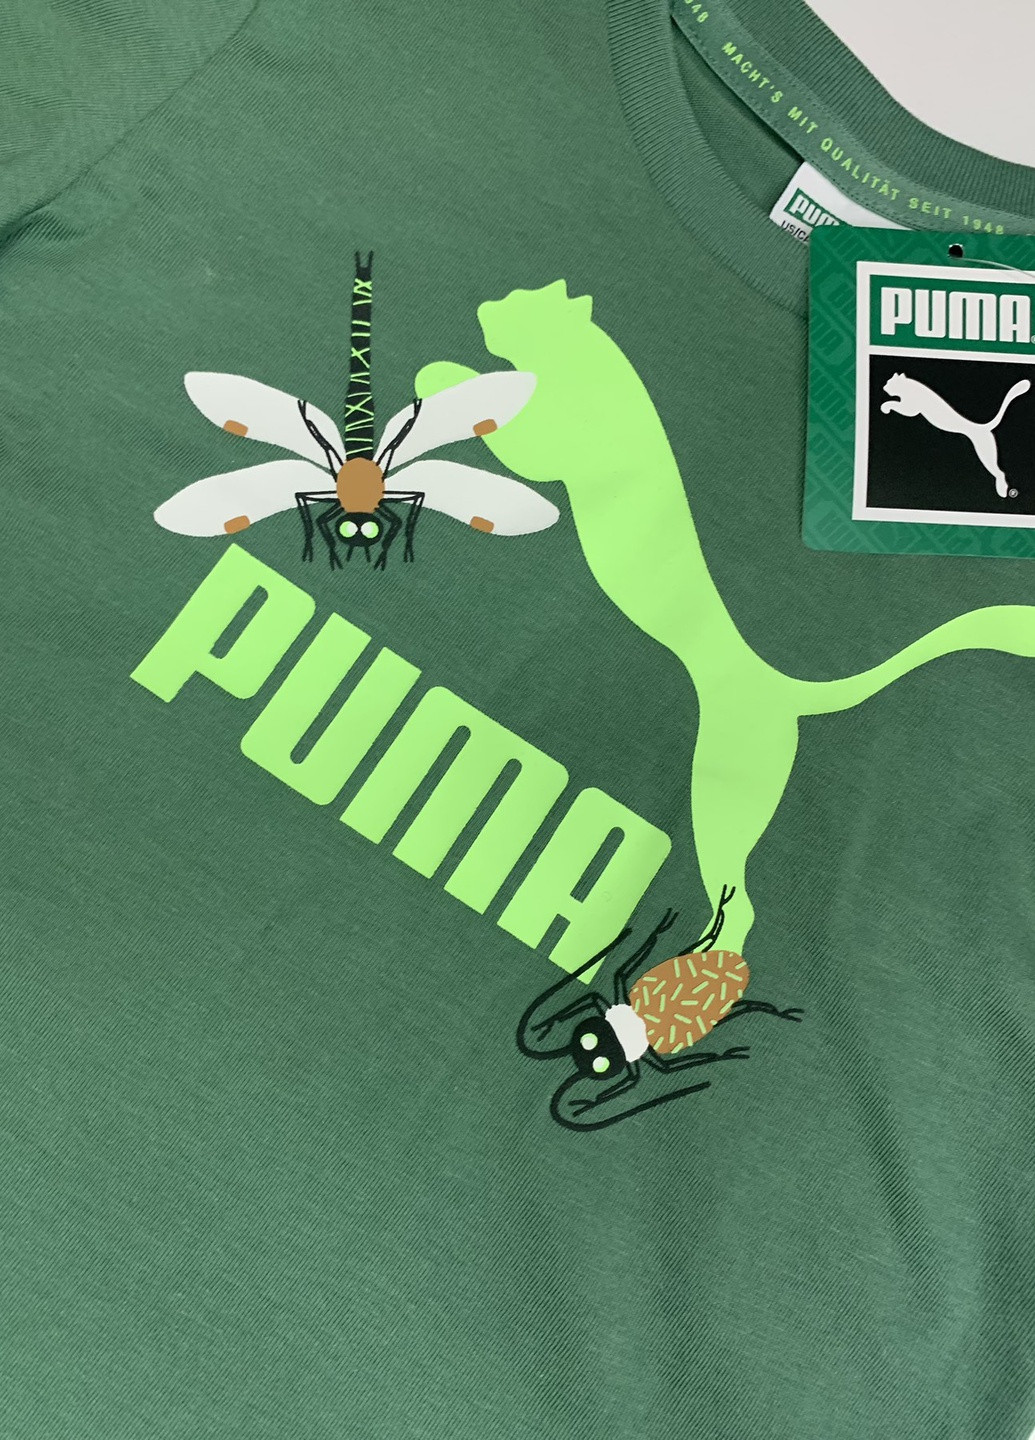 Зеленая футболка Puma